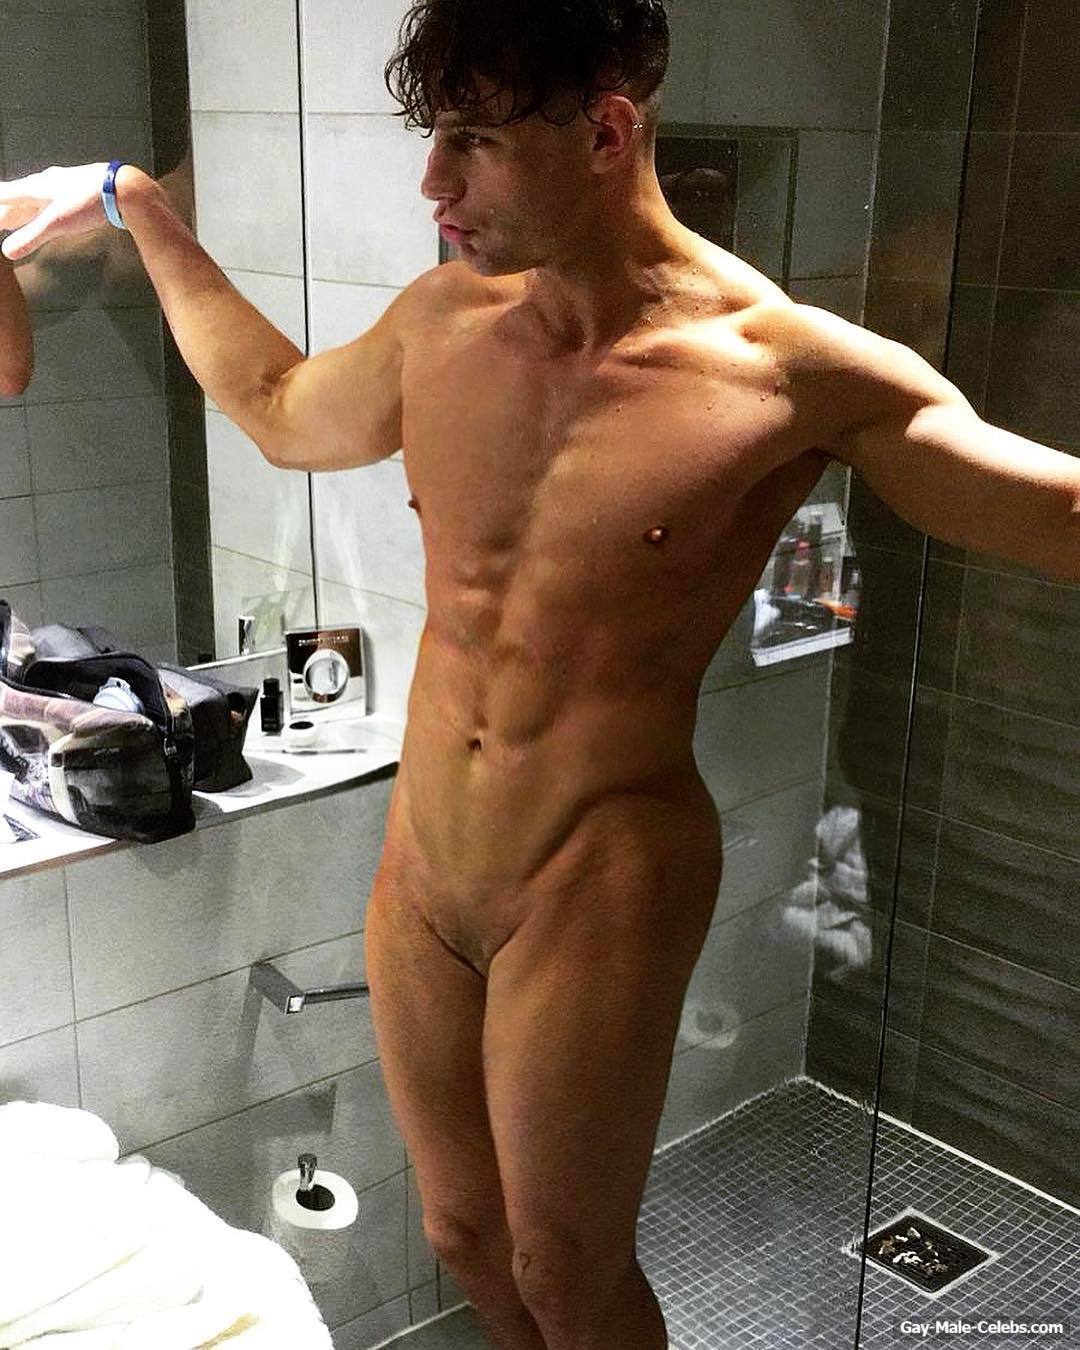 Reality celebrities nude - Nude Celebs - Leaked Pics & Videos LATEST.